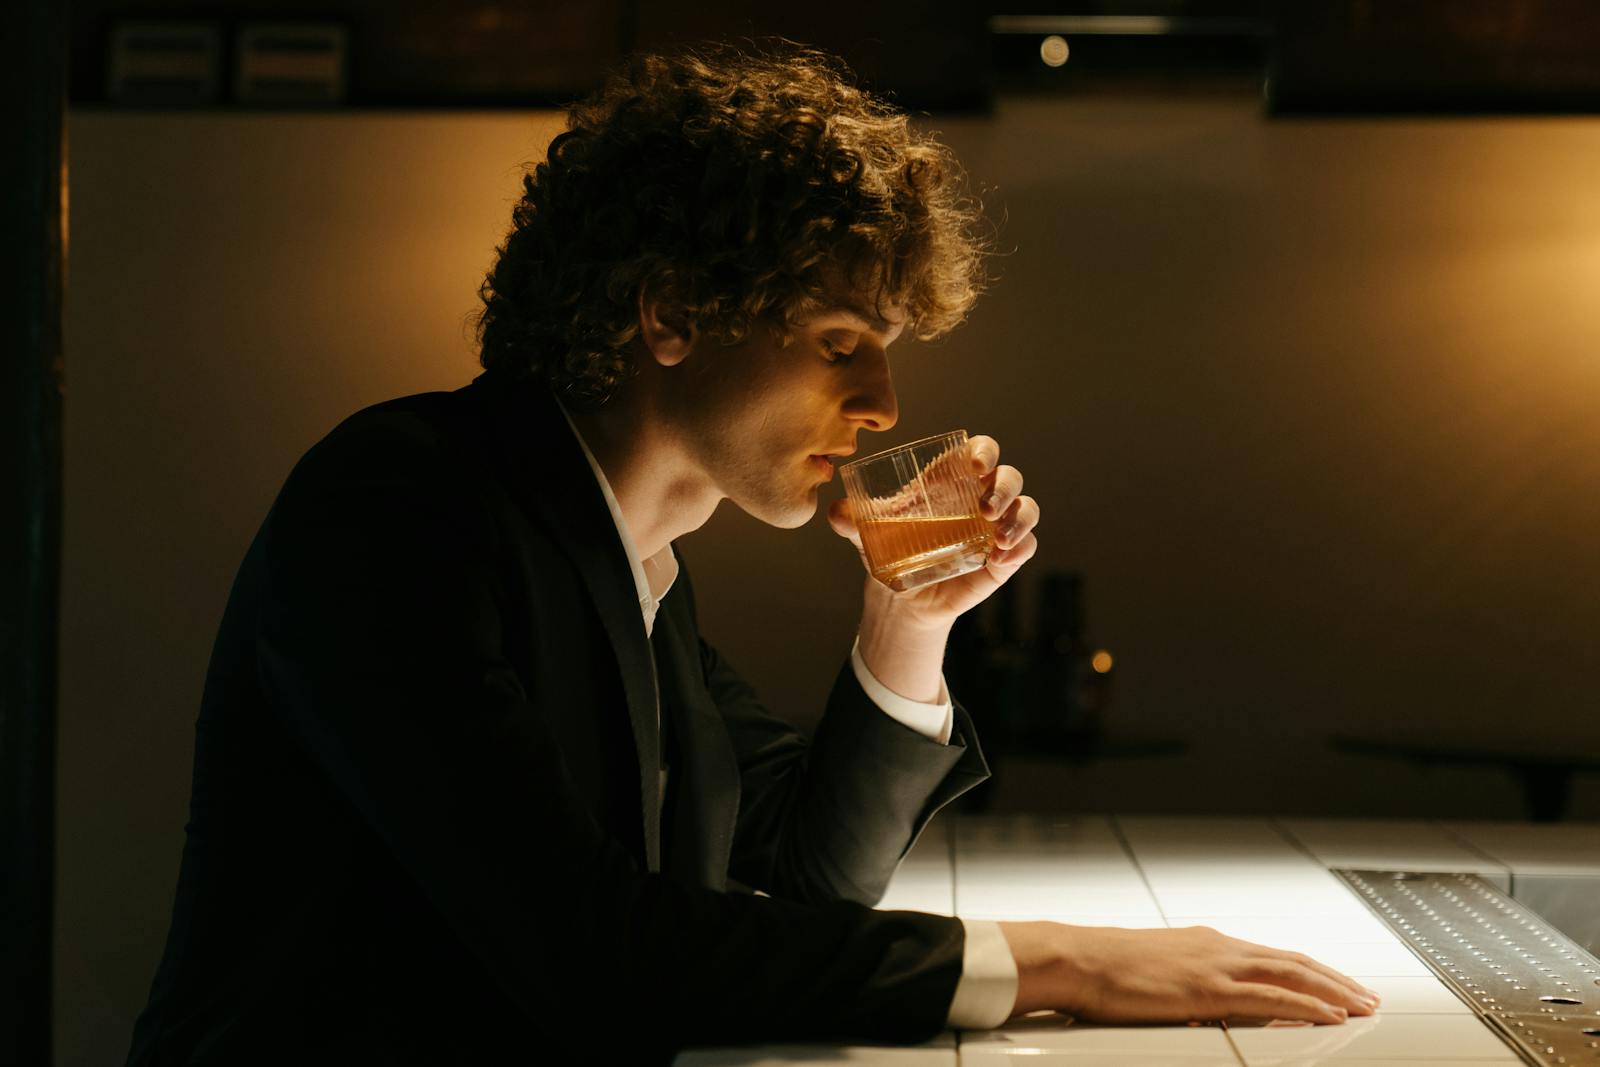 Man in Black Suit Drinking Beer